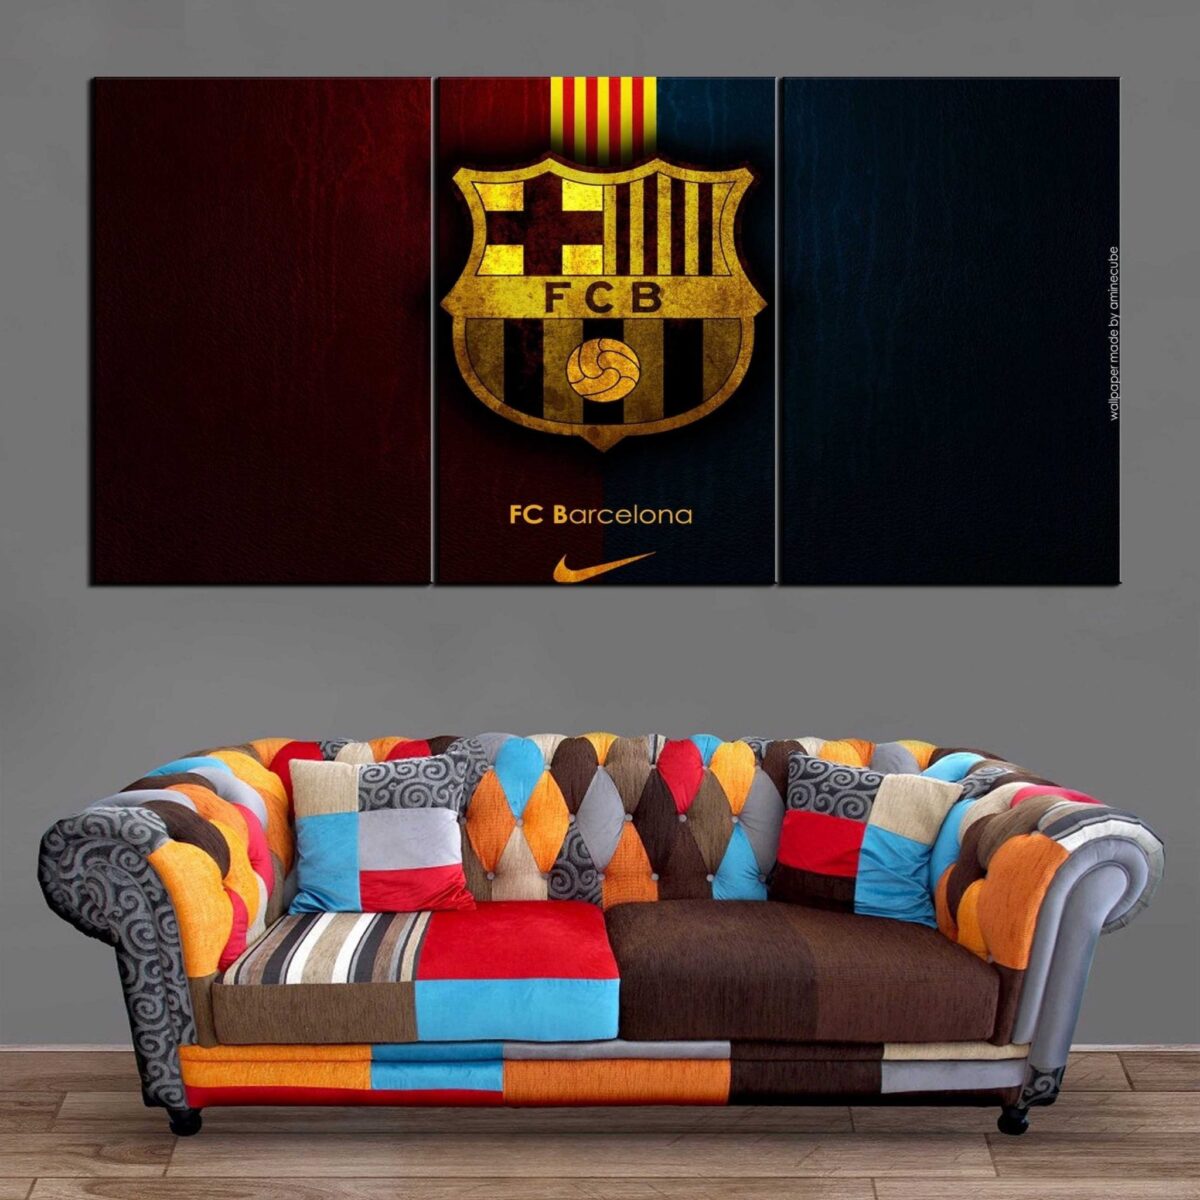 Décoration Murale Football FC Barcelona